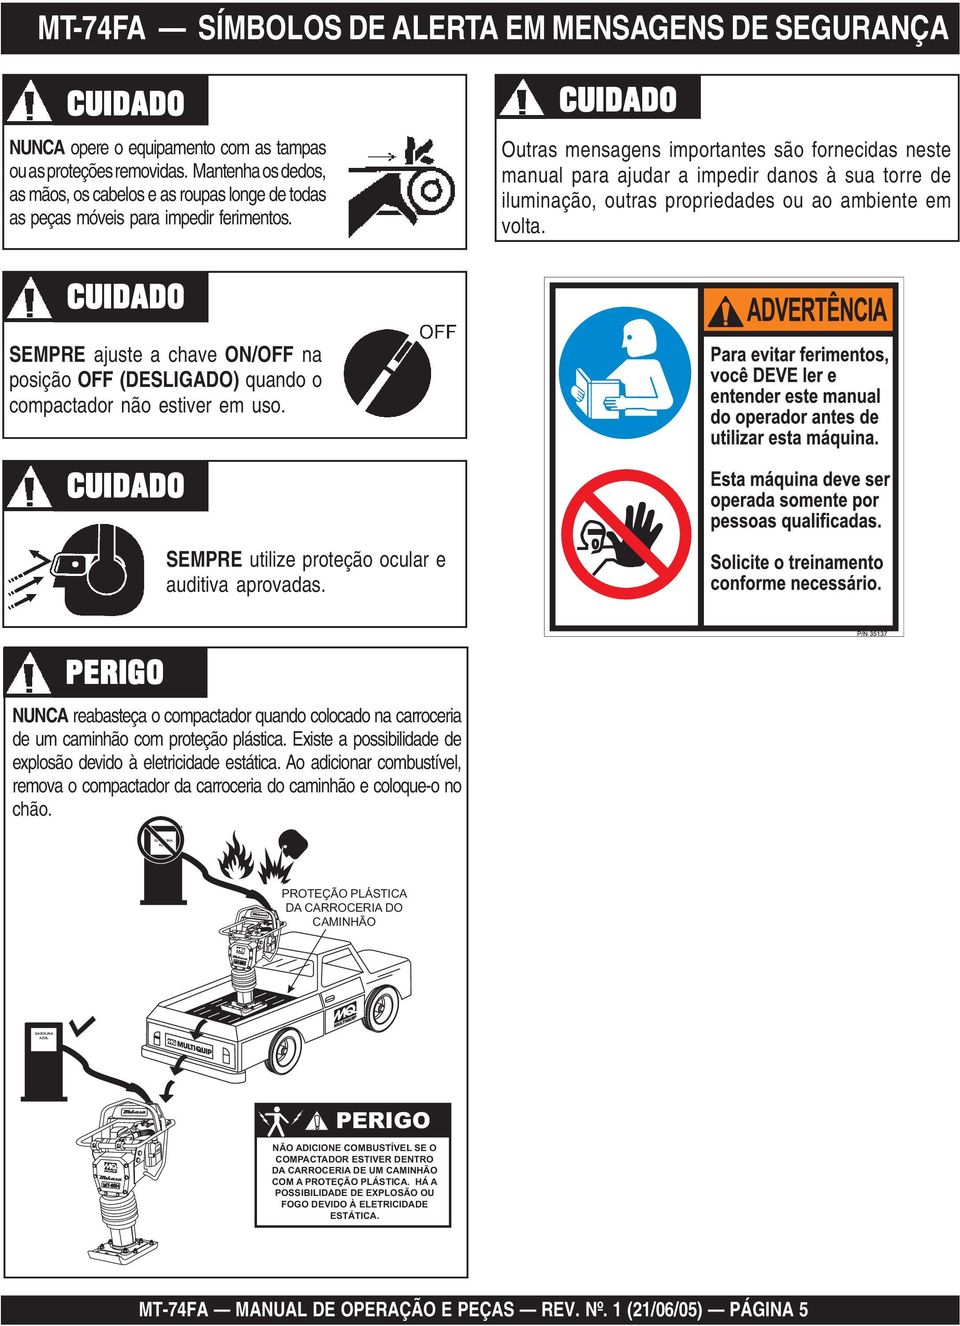 Perigo de Peças Rotativas CUIDADO Perigos de Danos ao Equipamento Outras mensagens importantes são fornecidas neste manual para ajudar a impedir danos à sua torre de iluminação, outras propriedades